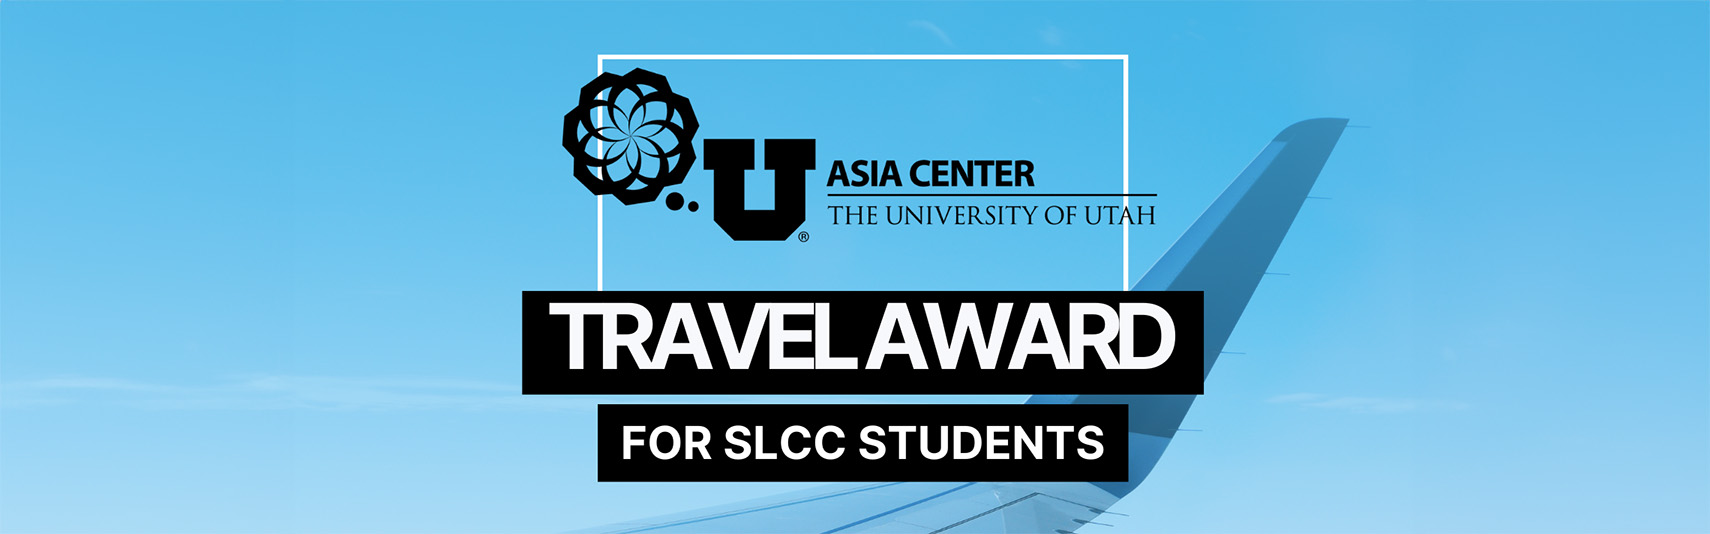 Asia Center, University of Utah, Travel award for SLCC students